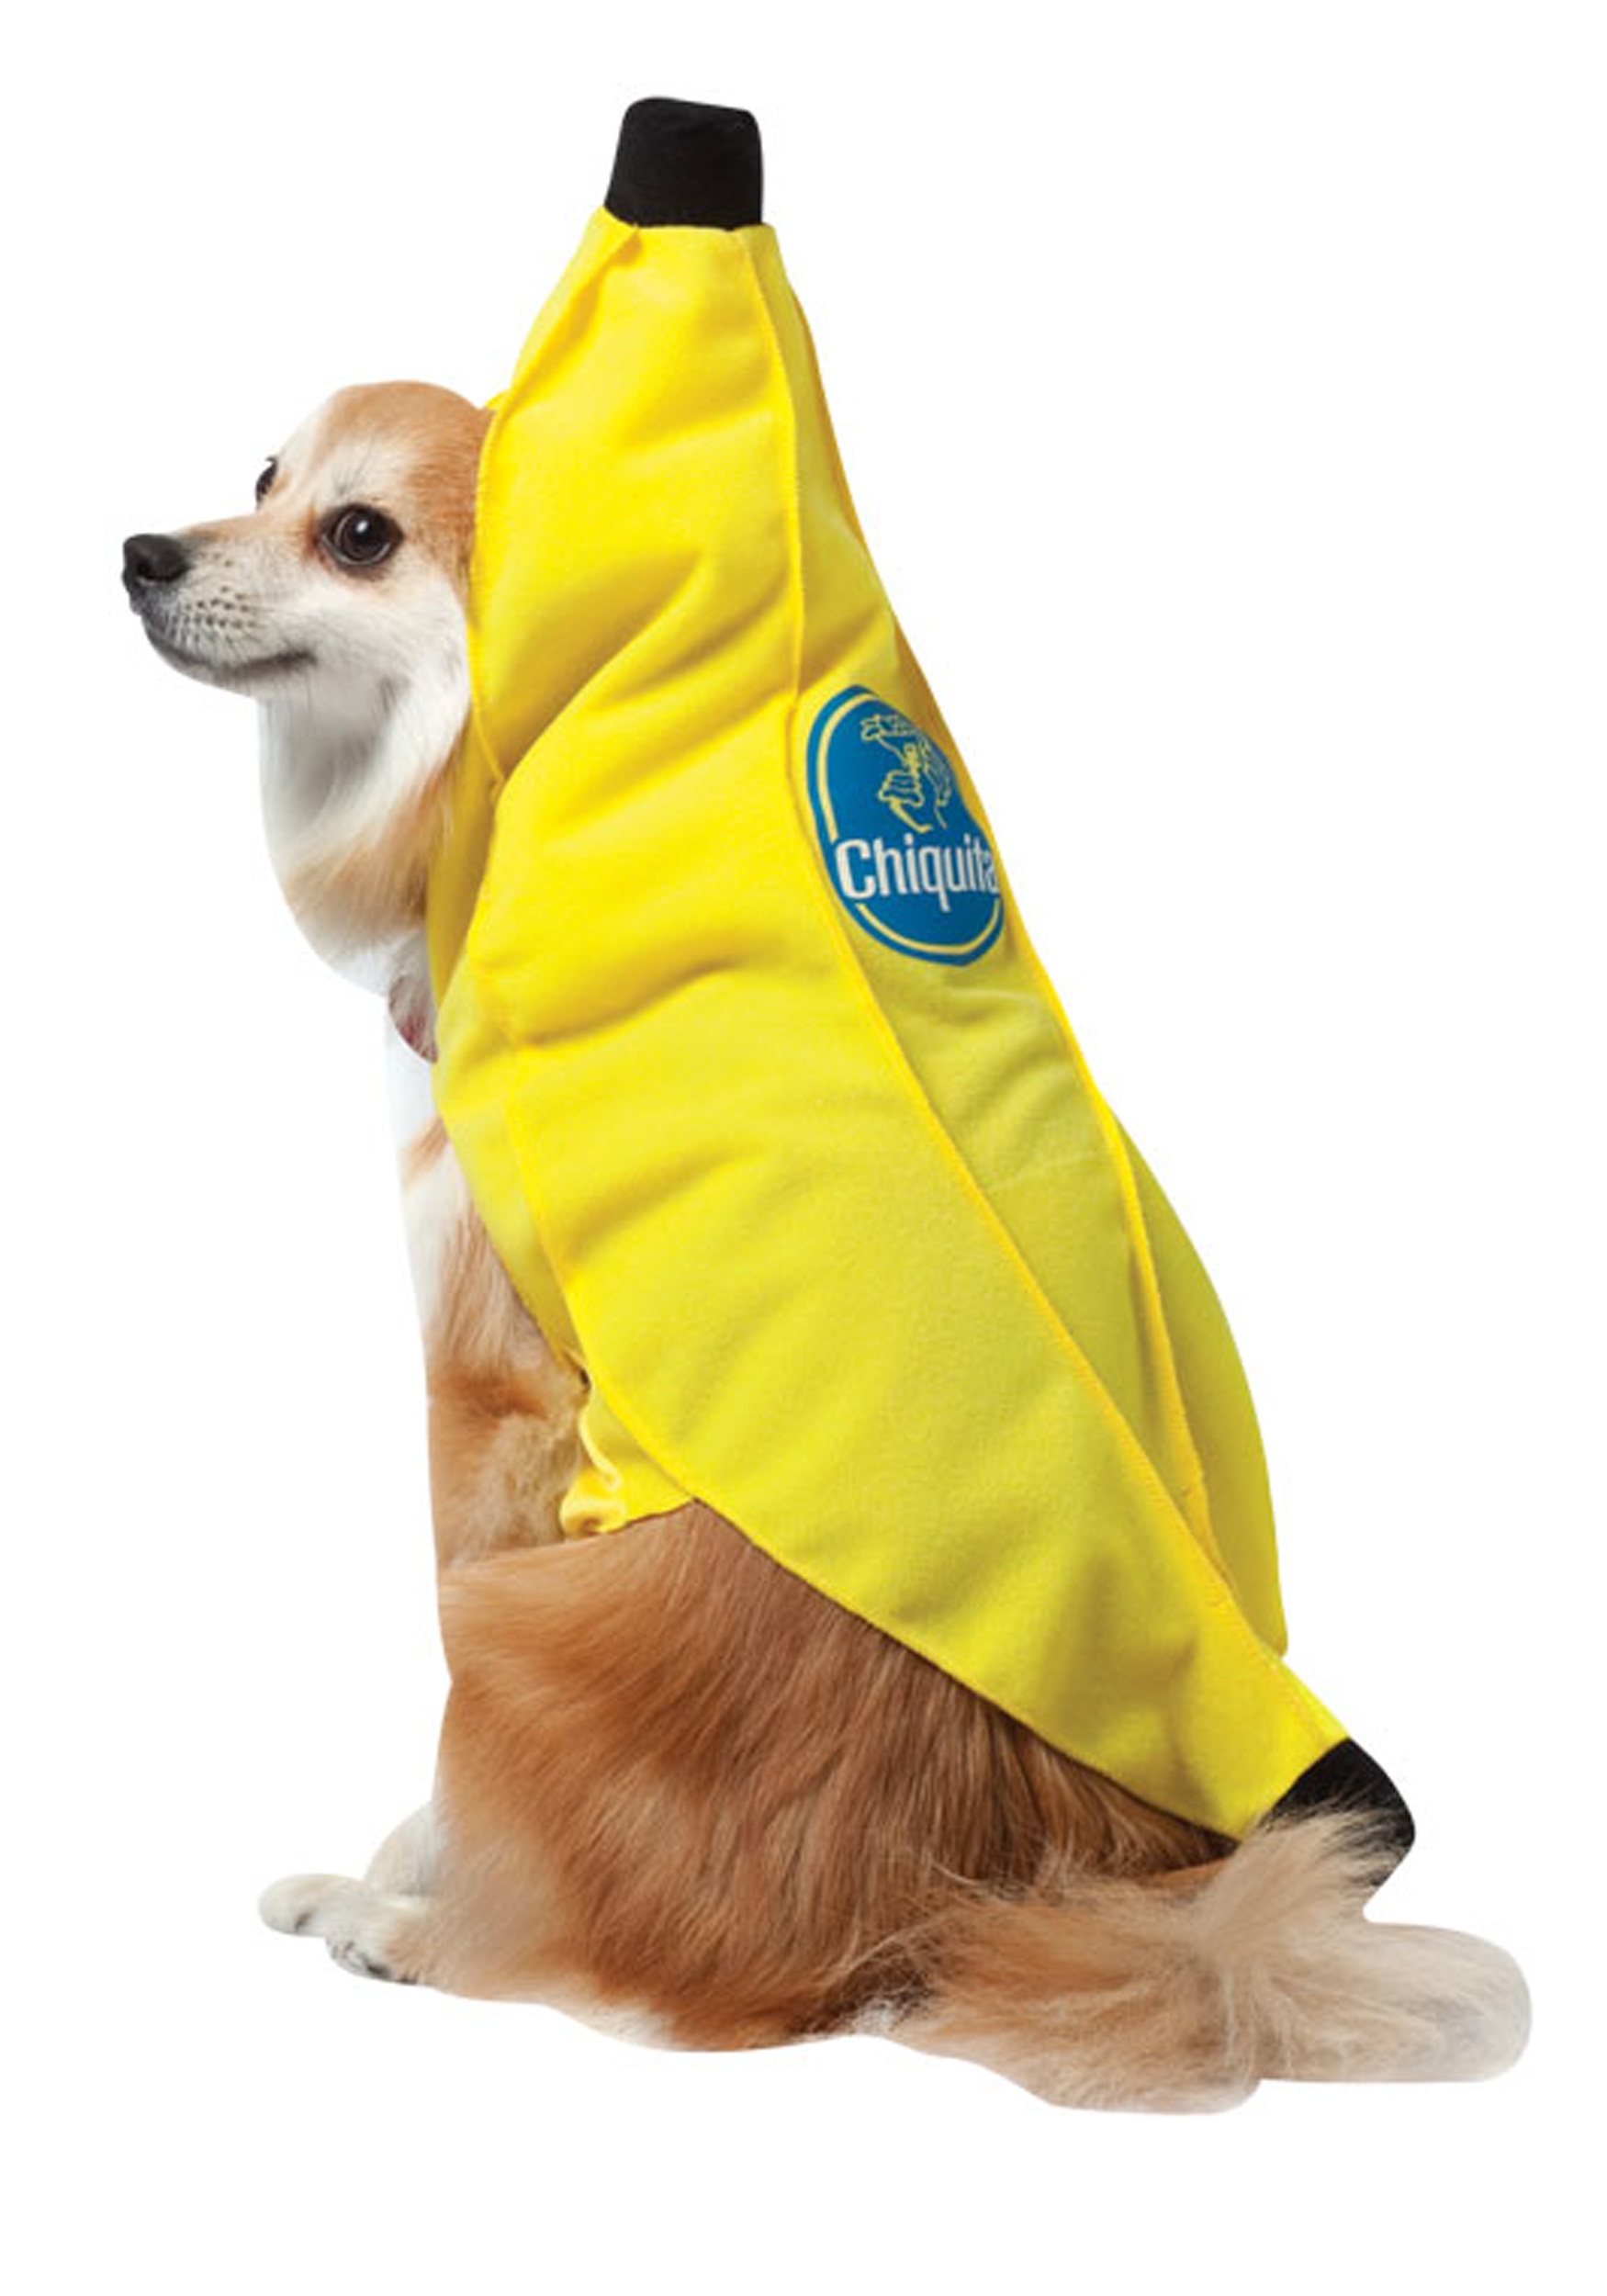 Chiquita Banana Dog Costume - Halloween Costume Ideas 2022